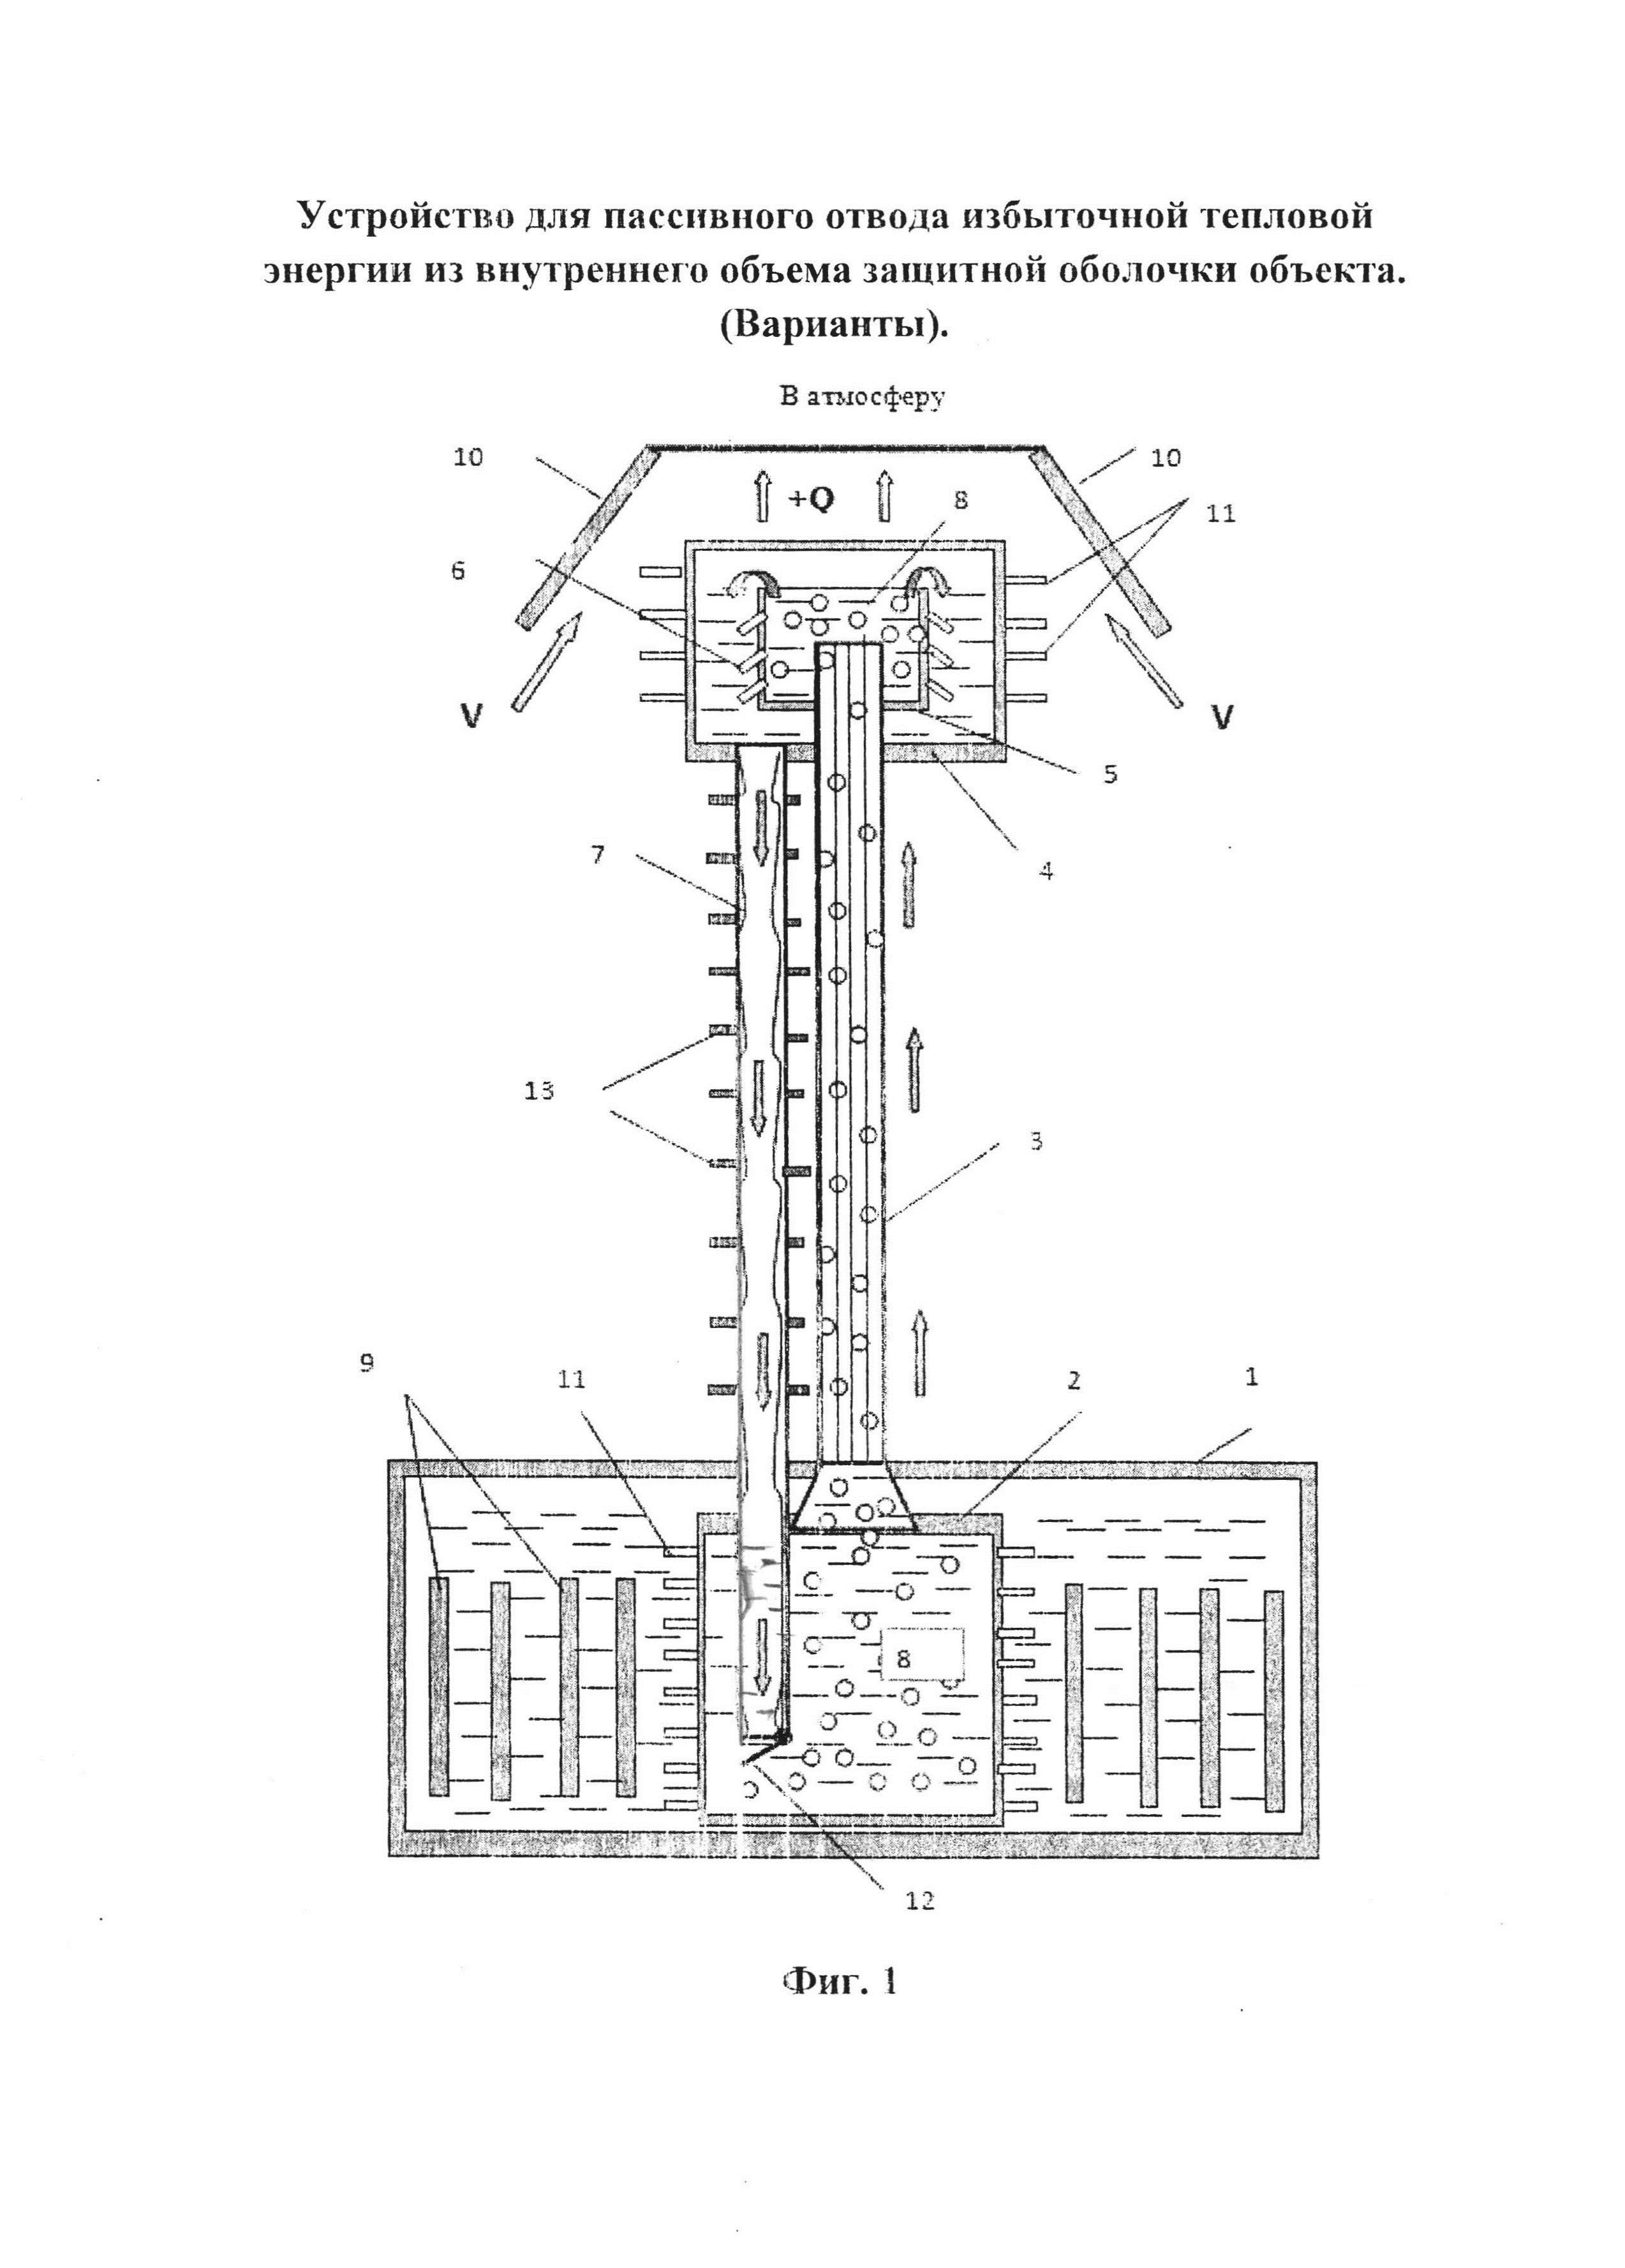 Устройство для пассивного отвода избыточной тепловой энергии из внутреннего объема защитной оболочки объекта (варианты)